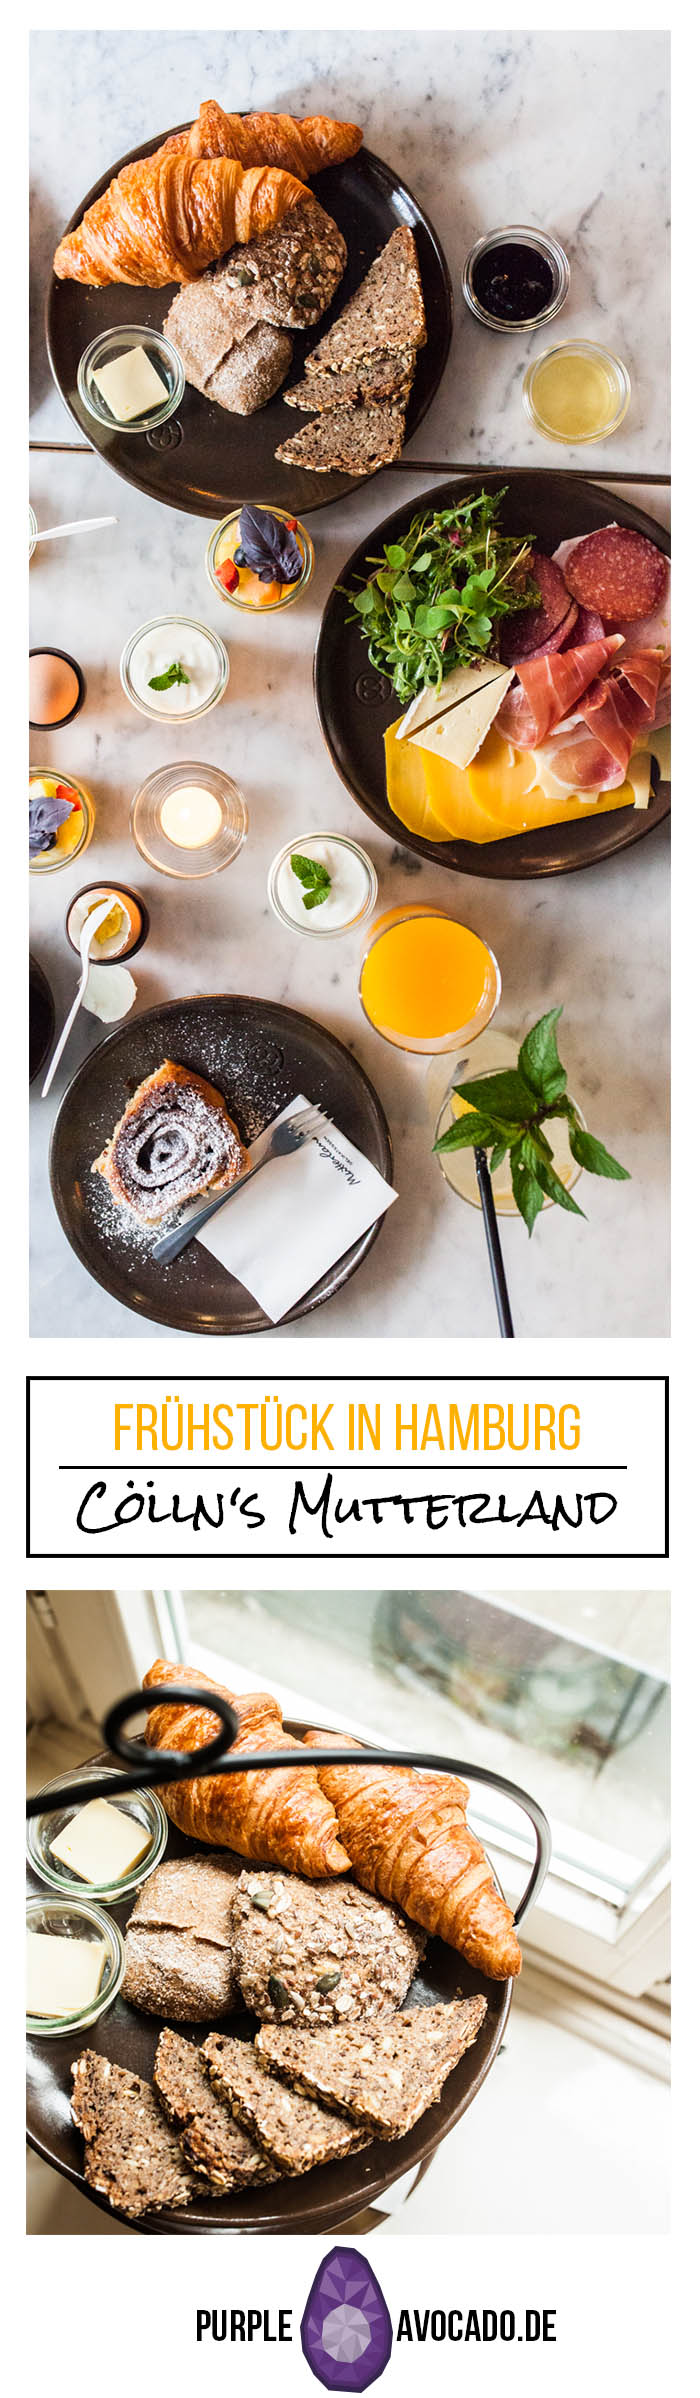 Auf der Suche nach dem besten Frühstück in Hamburg? In Hamburgs Innenstadt kann ich euch das Cöllns Mutterland nur wärmstens empfehlen. Hier gibt es die besten Franzbrötchen und viele andere, köstliche Frühstücksspezialitäten. #hamburg #restaurant #restaurants #essen #frühstück #cityguide #städtetrip #städte trip